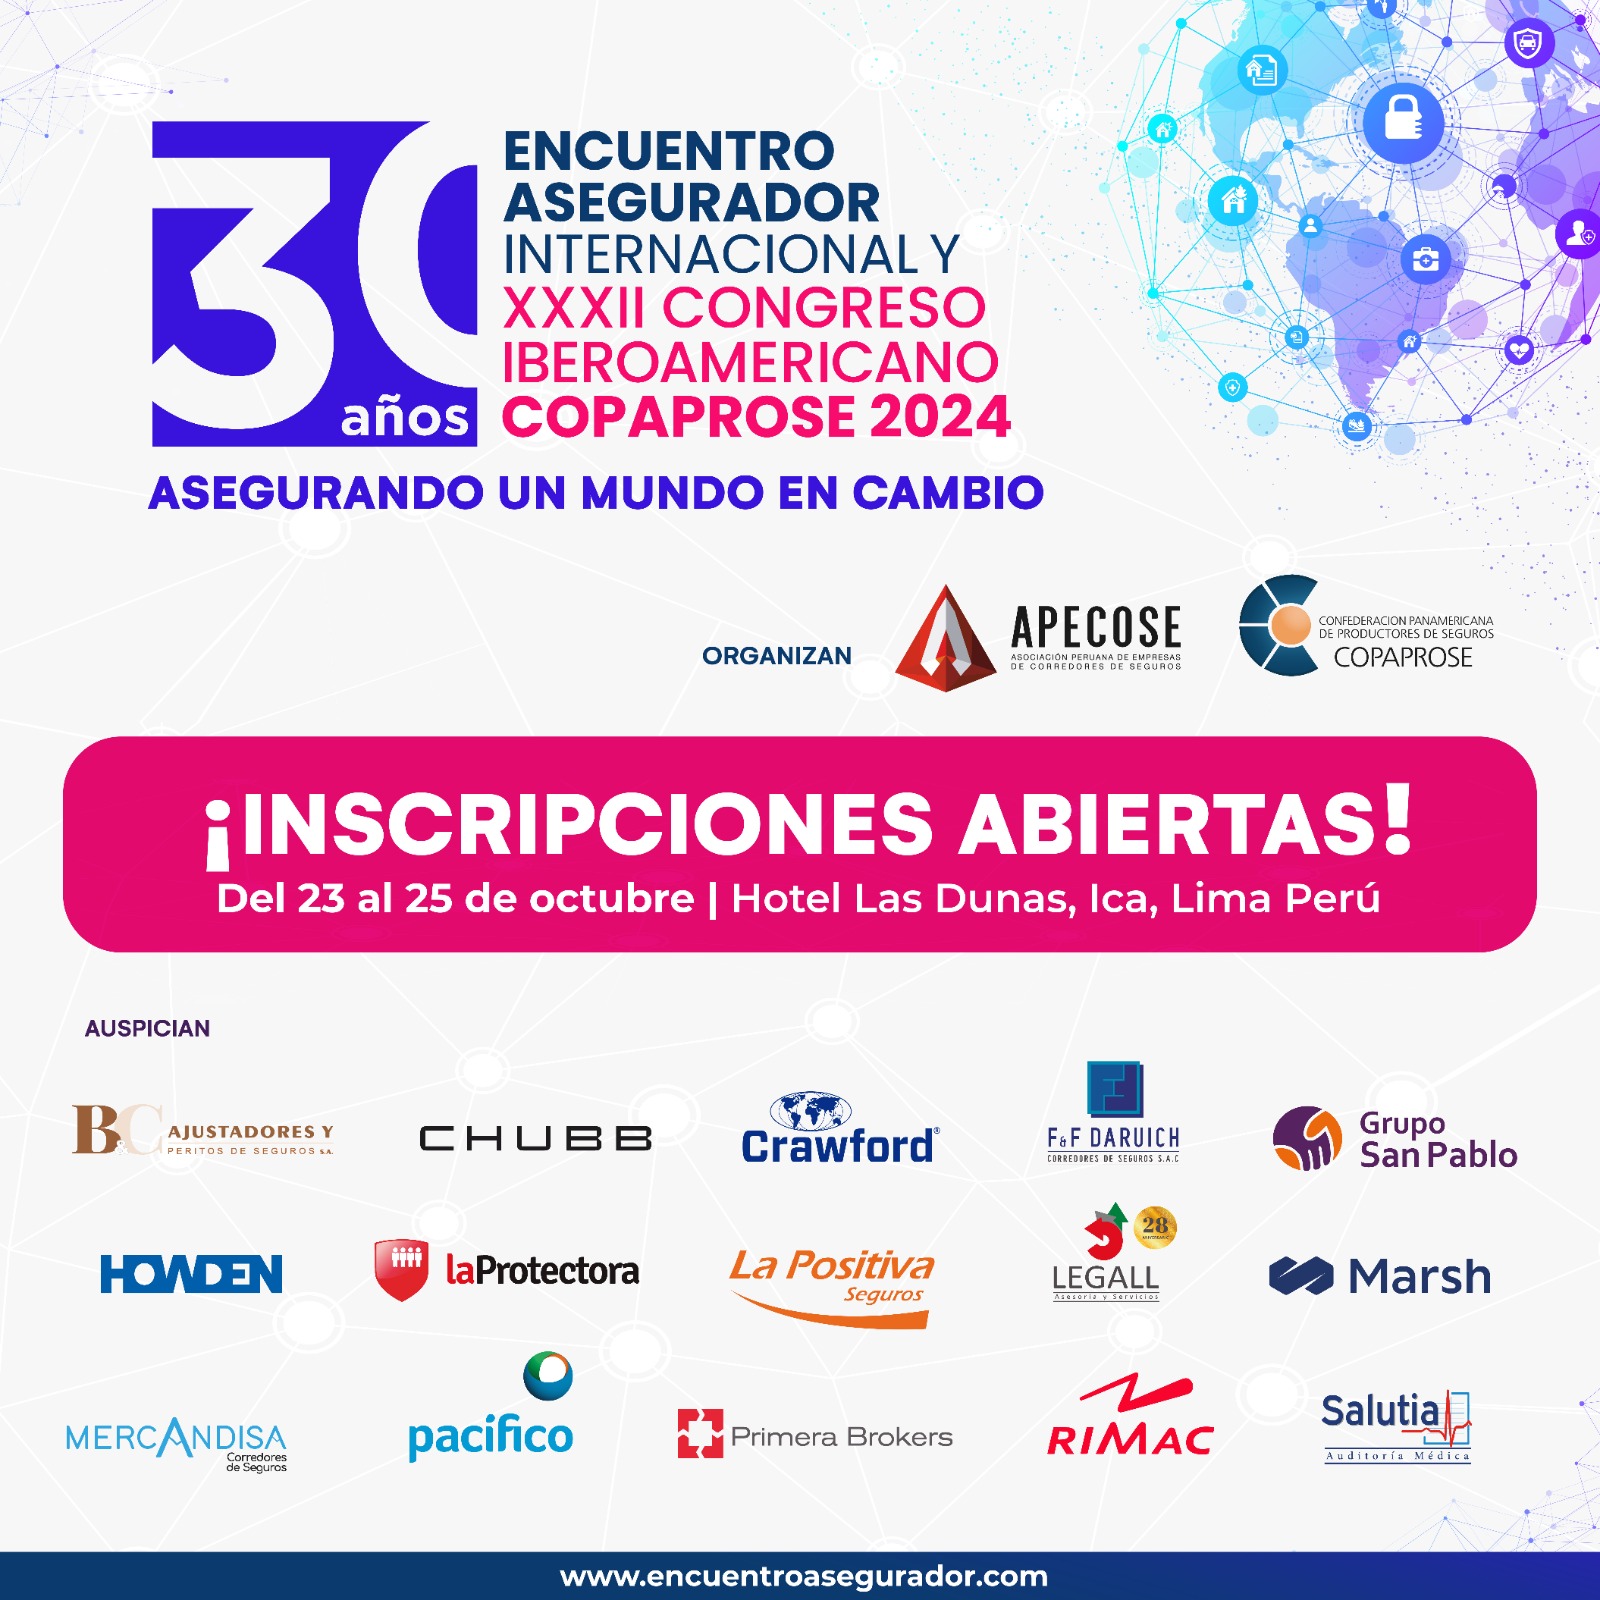 ¡Inscripciones abiertas!: XXXII Congreso Iberoamericano COPAPROSE Perú 2024